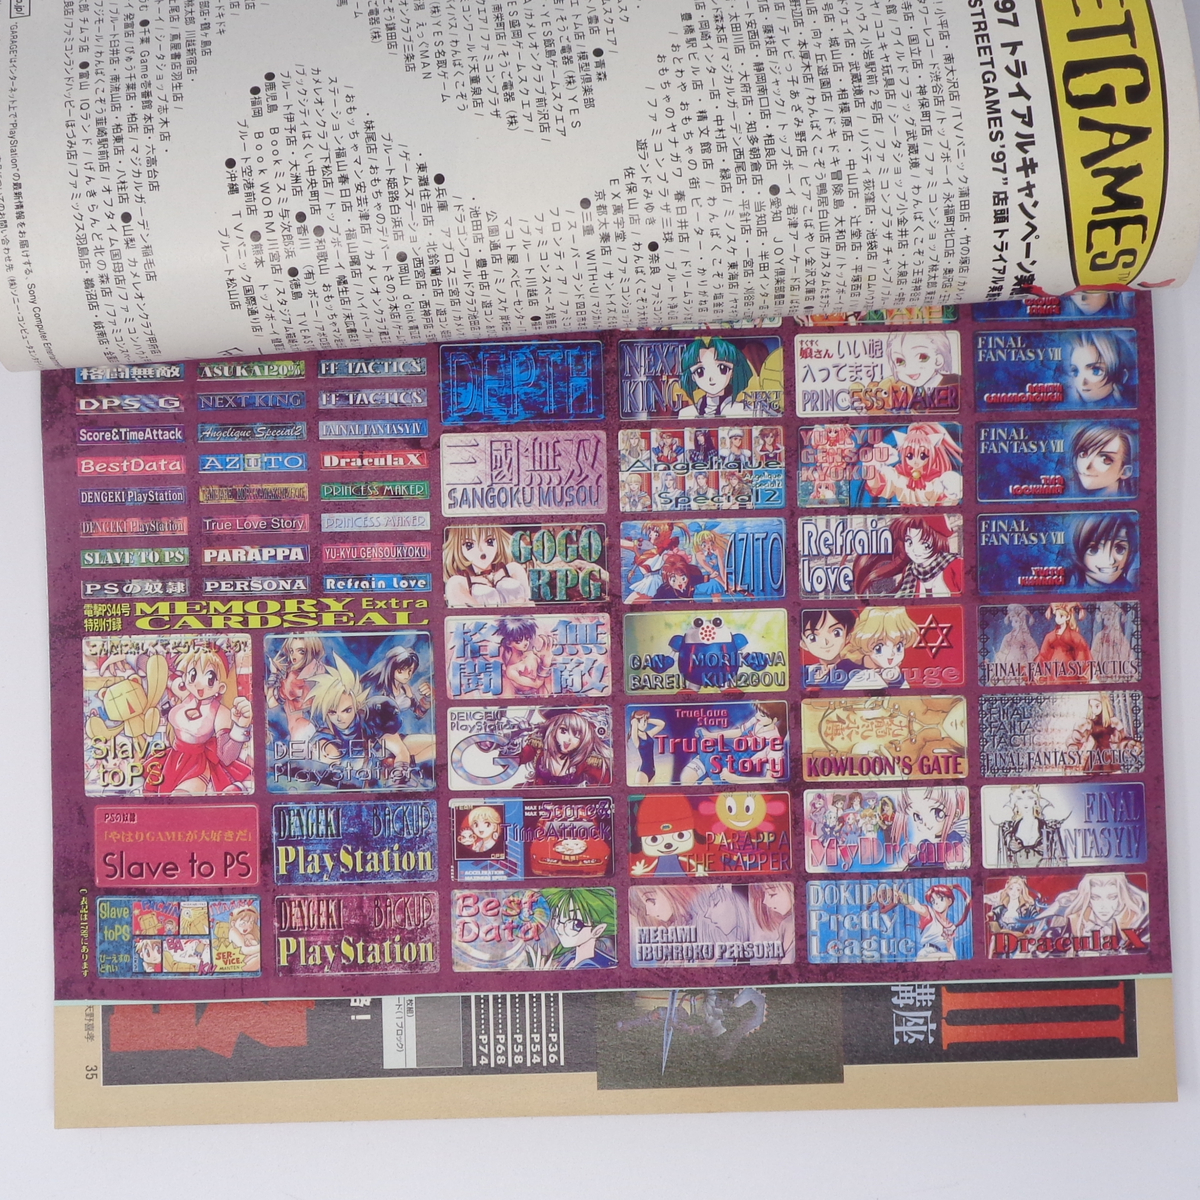 電撃PlayStation 1997年4月11日号Vol.44 付録メモリーカードシール未使用/FF7/電撃プレイステーション/ゲーム雑誌[Free Shipping]の画像7